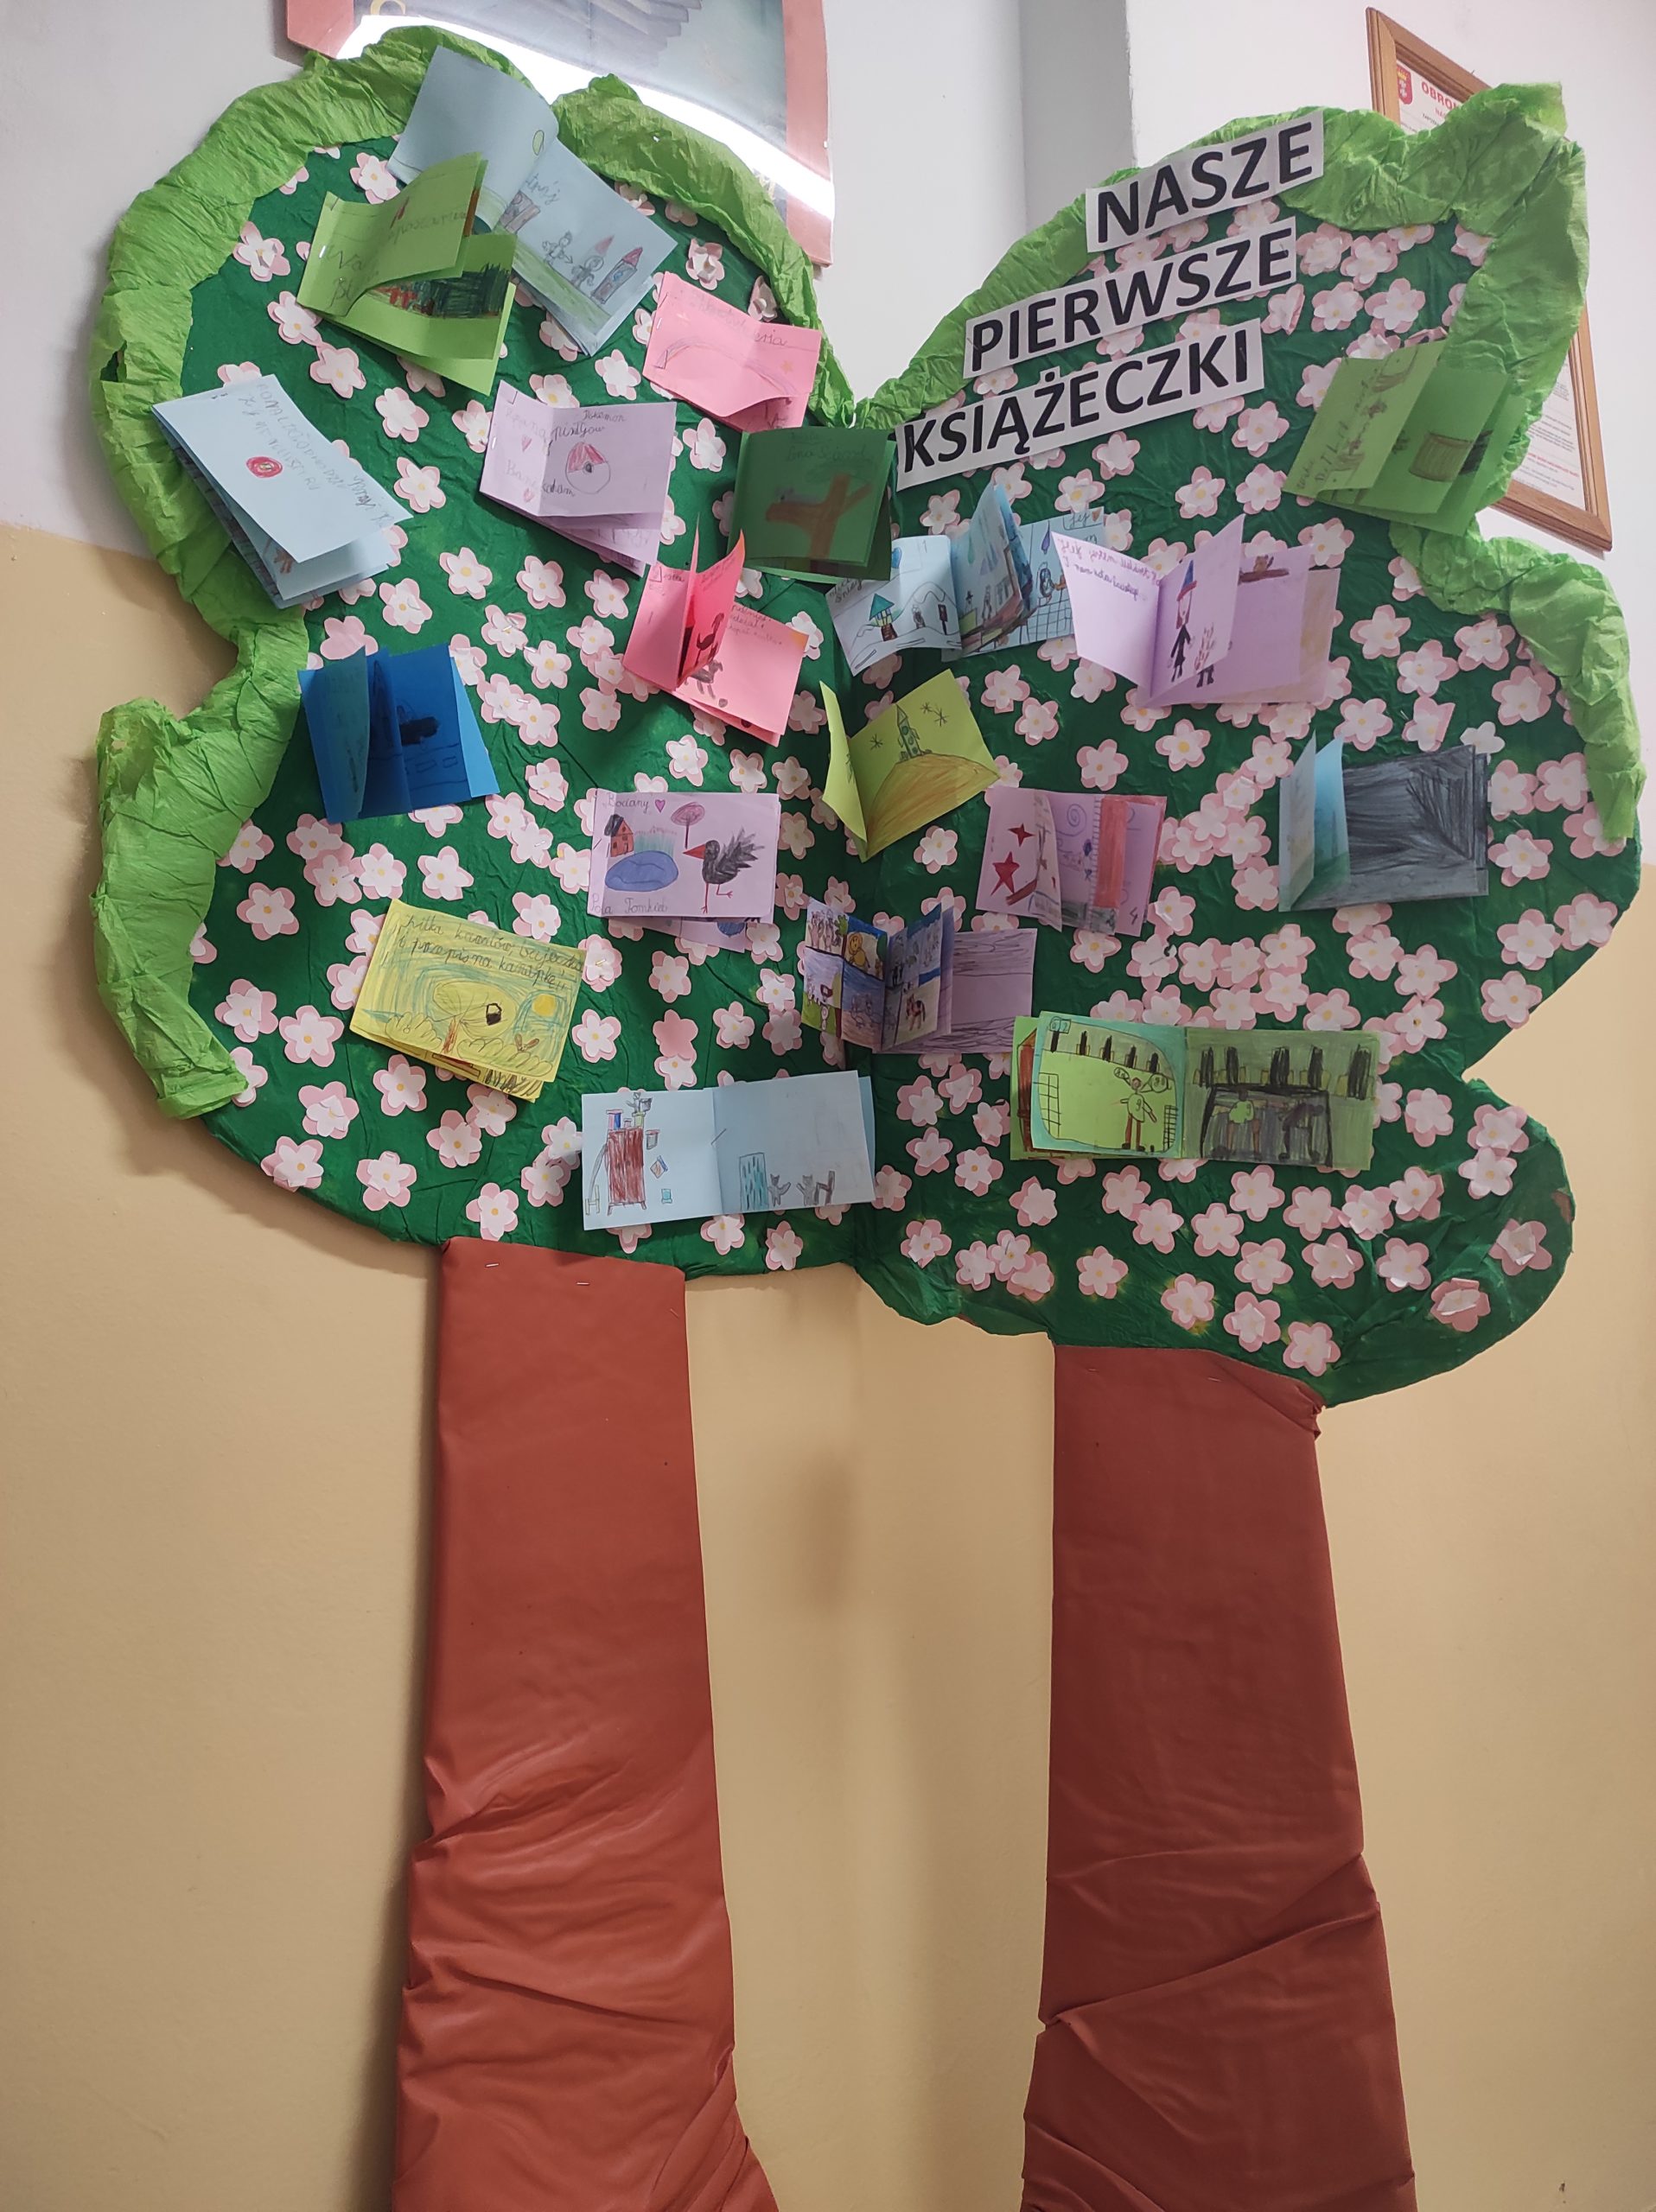 Kartonowe, kolorowe drzewo z przyczepionymi malutkimi książeczkami, które wykonały dzieci z pierwszej klasy